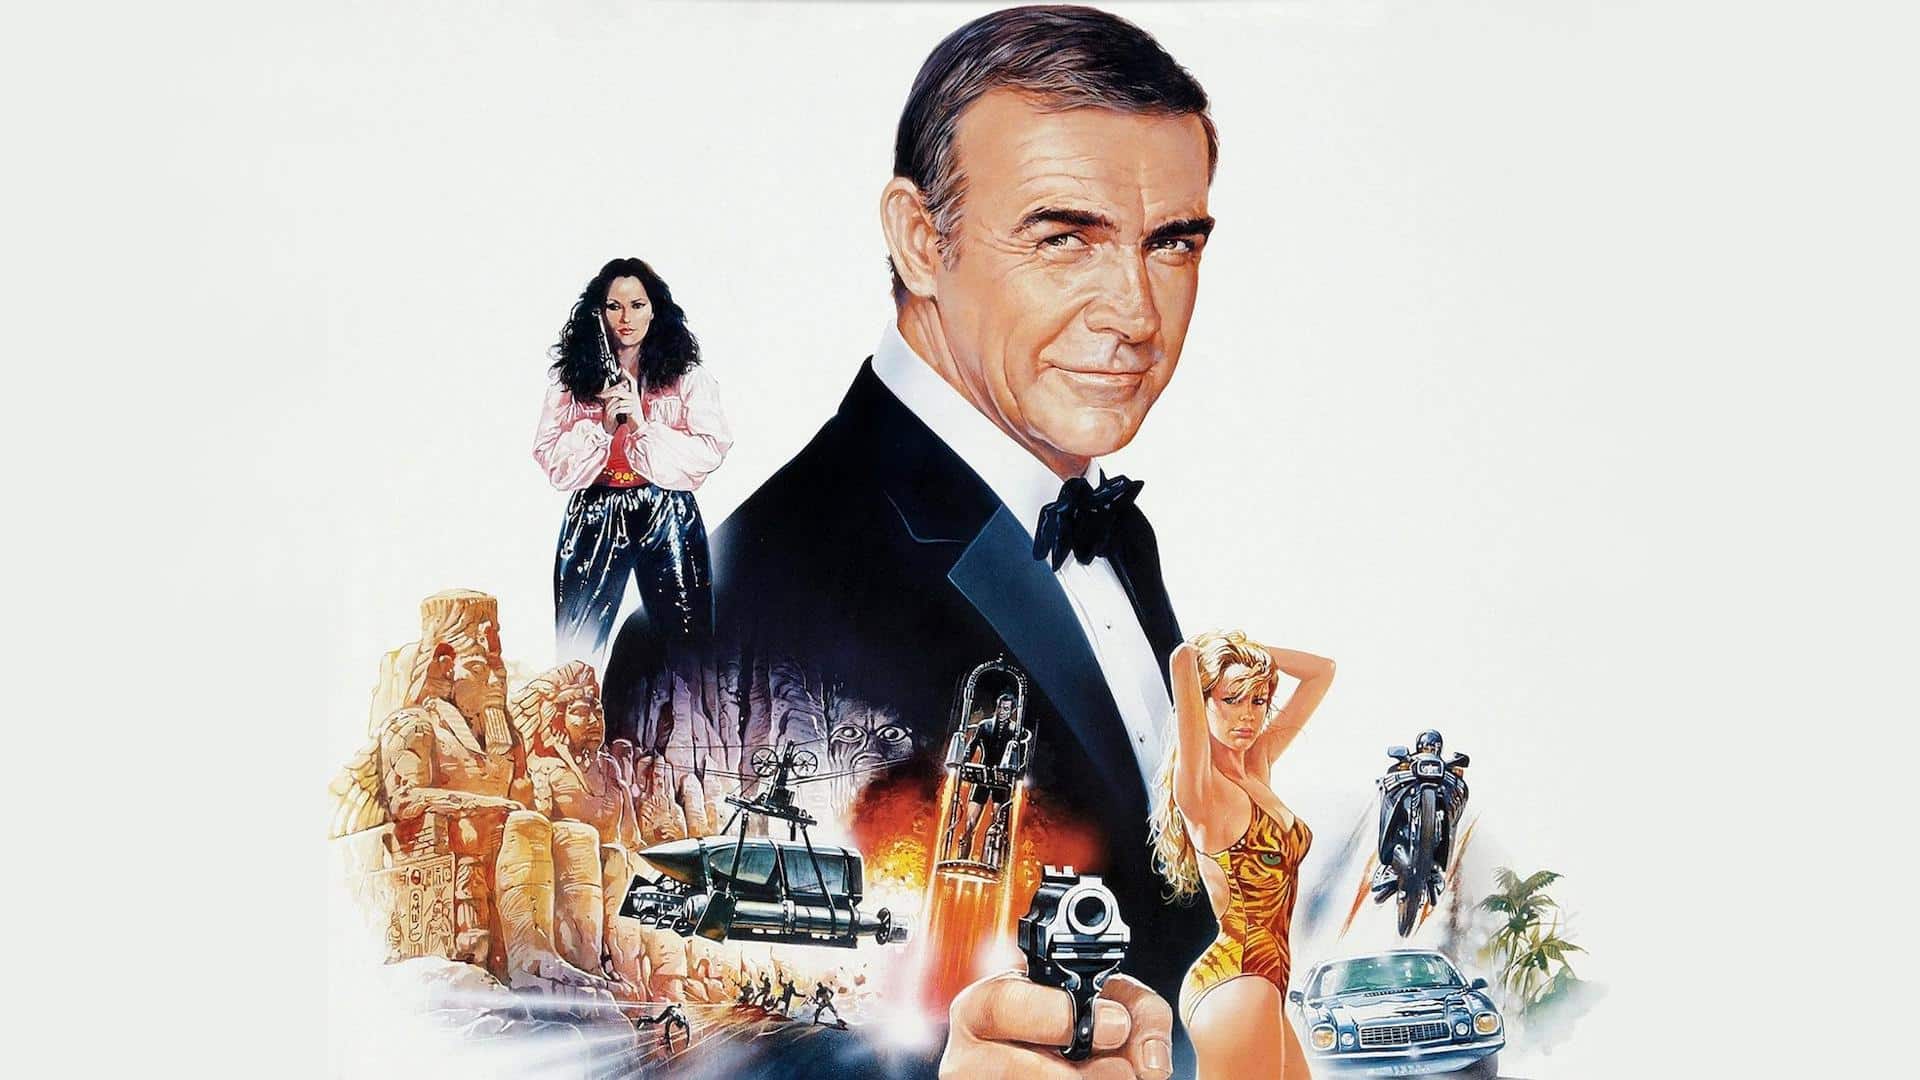 Agente 007 – Mai dire mai: recensione del film con Sean Connery